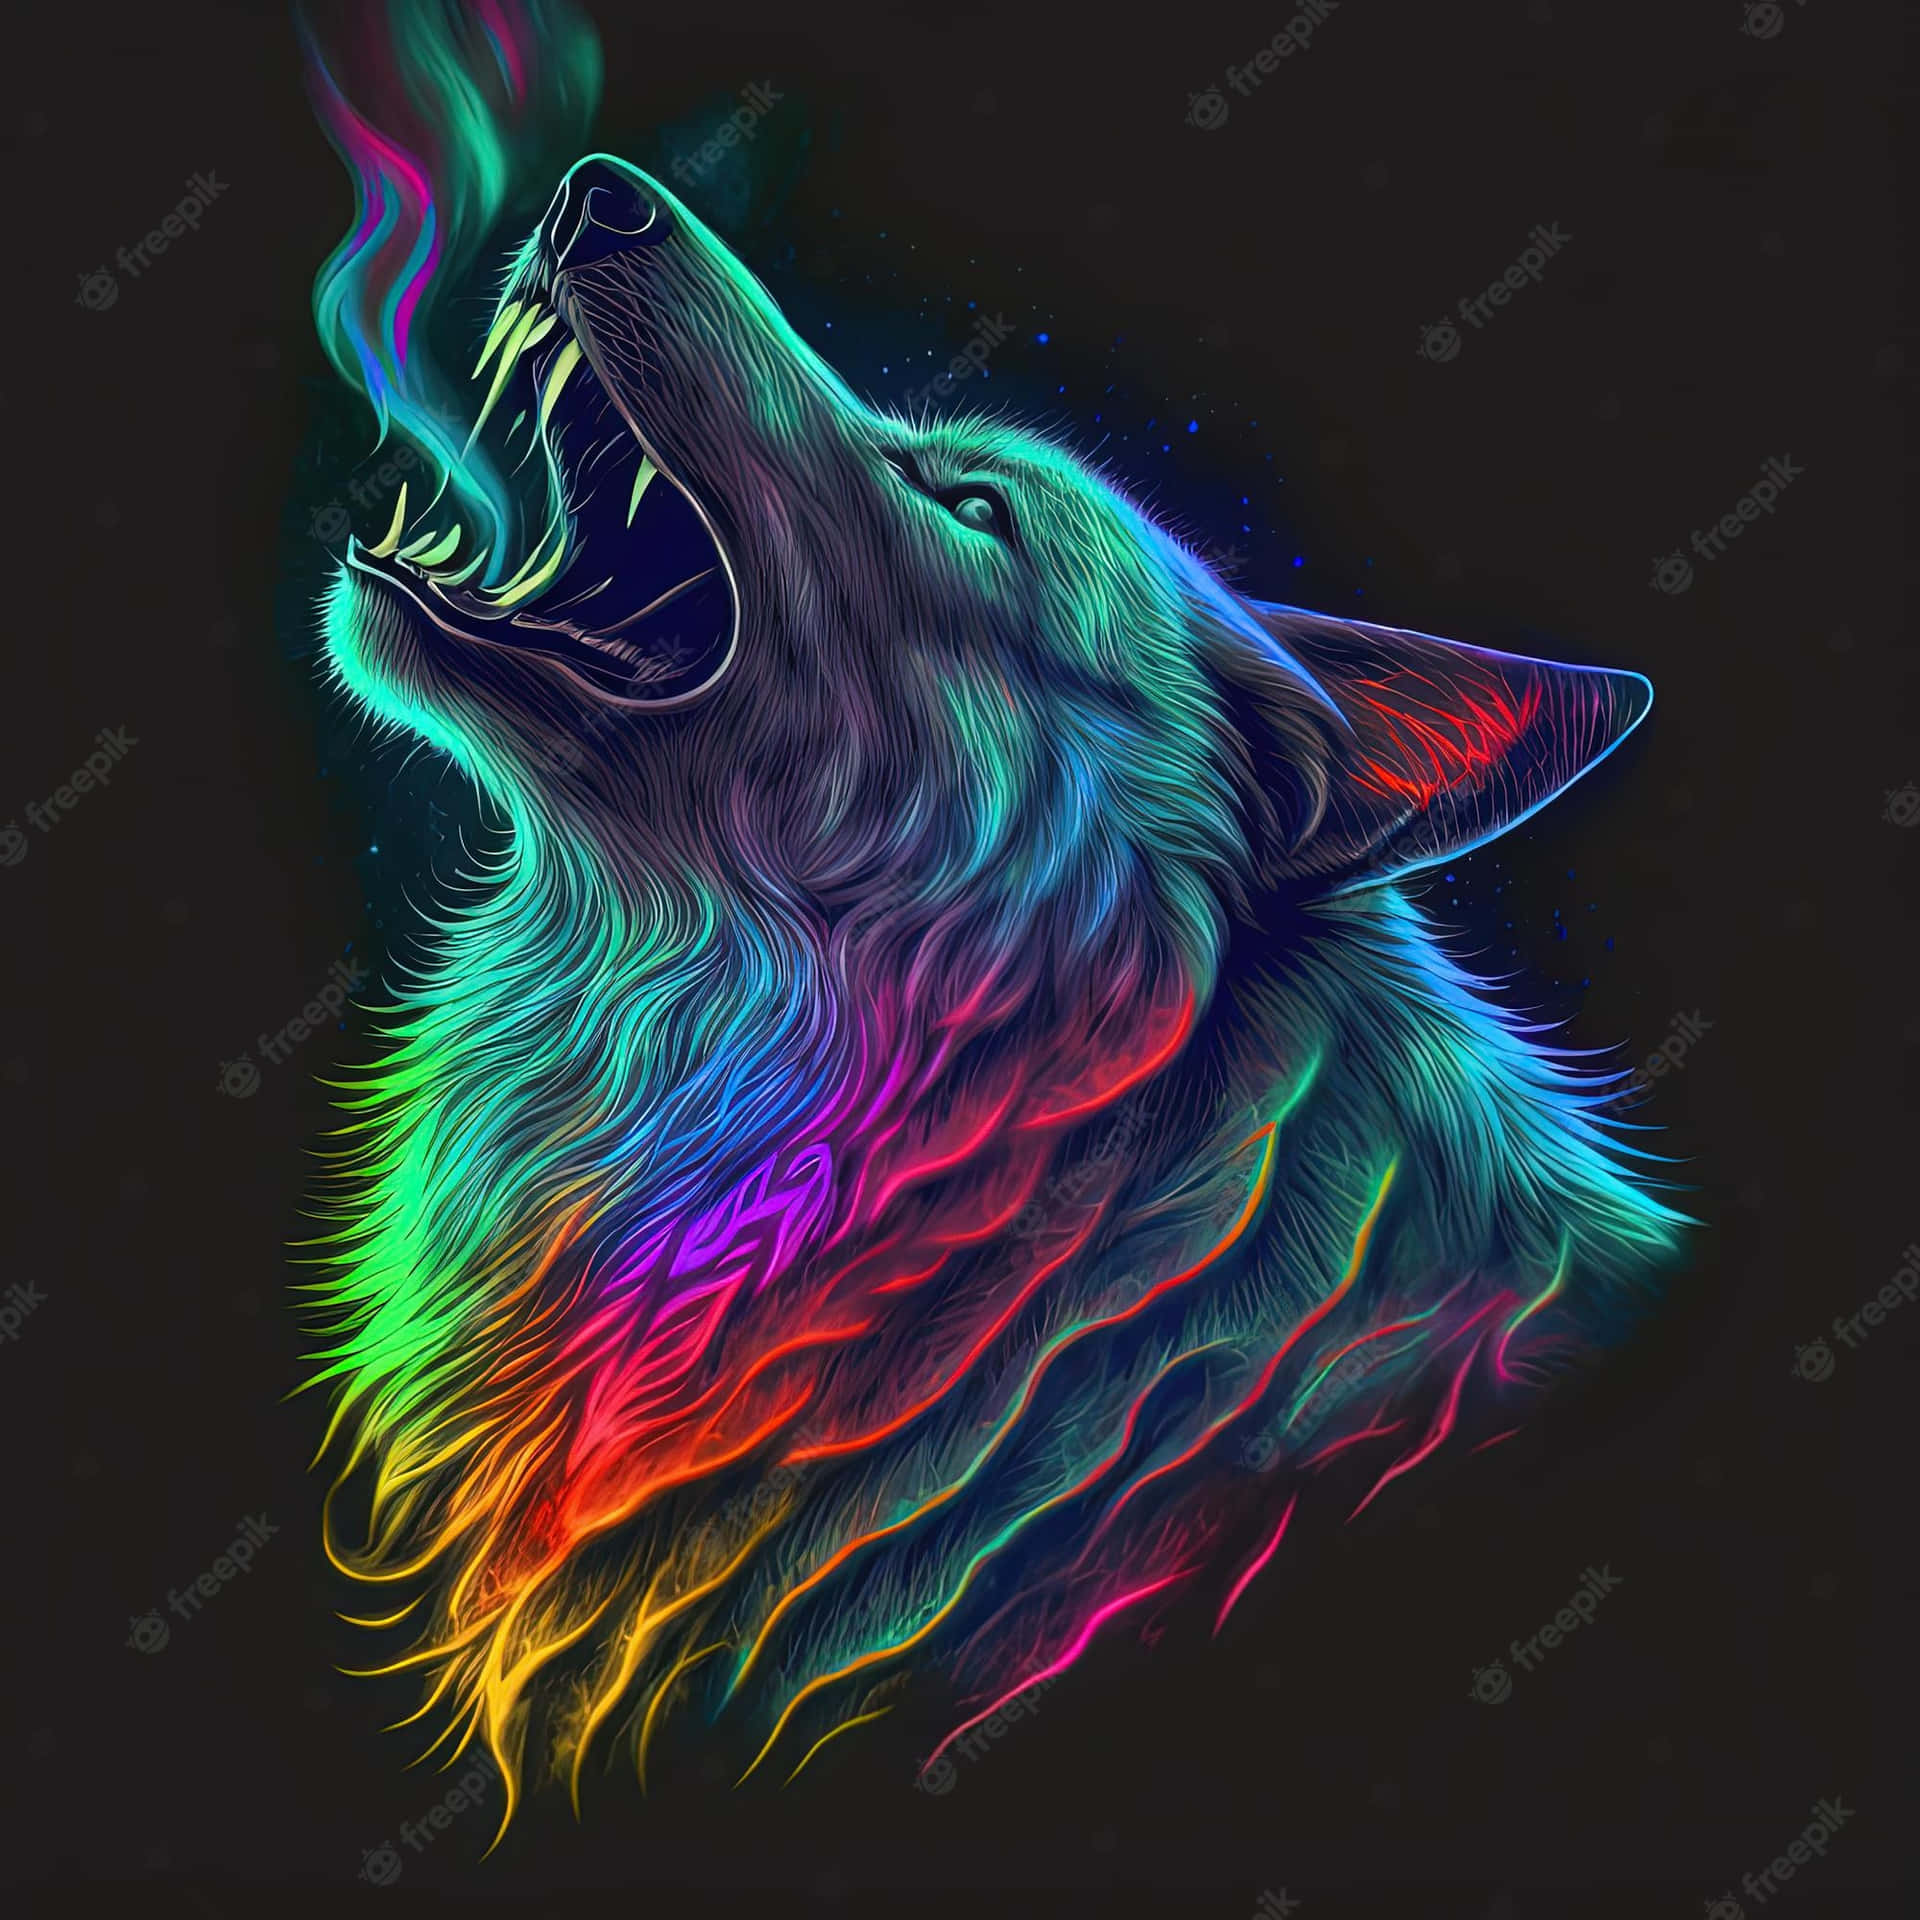 Einmysteriöser Regenbogenwolf Steht Majestätisch Da Und Blickt In Die Ferne. Wallpaper